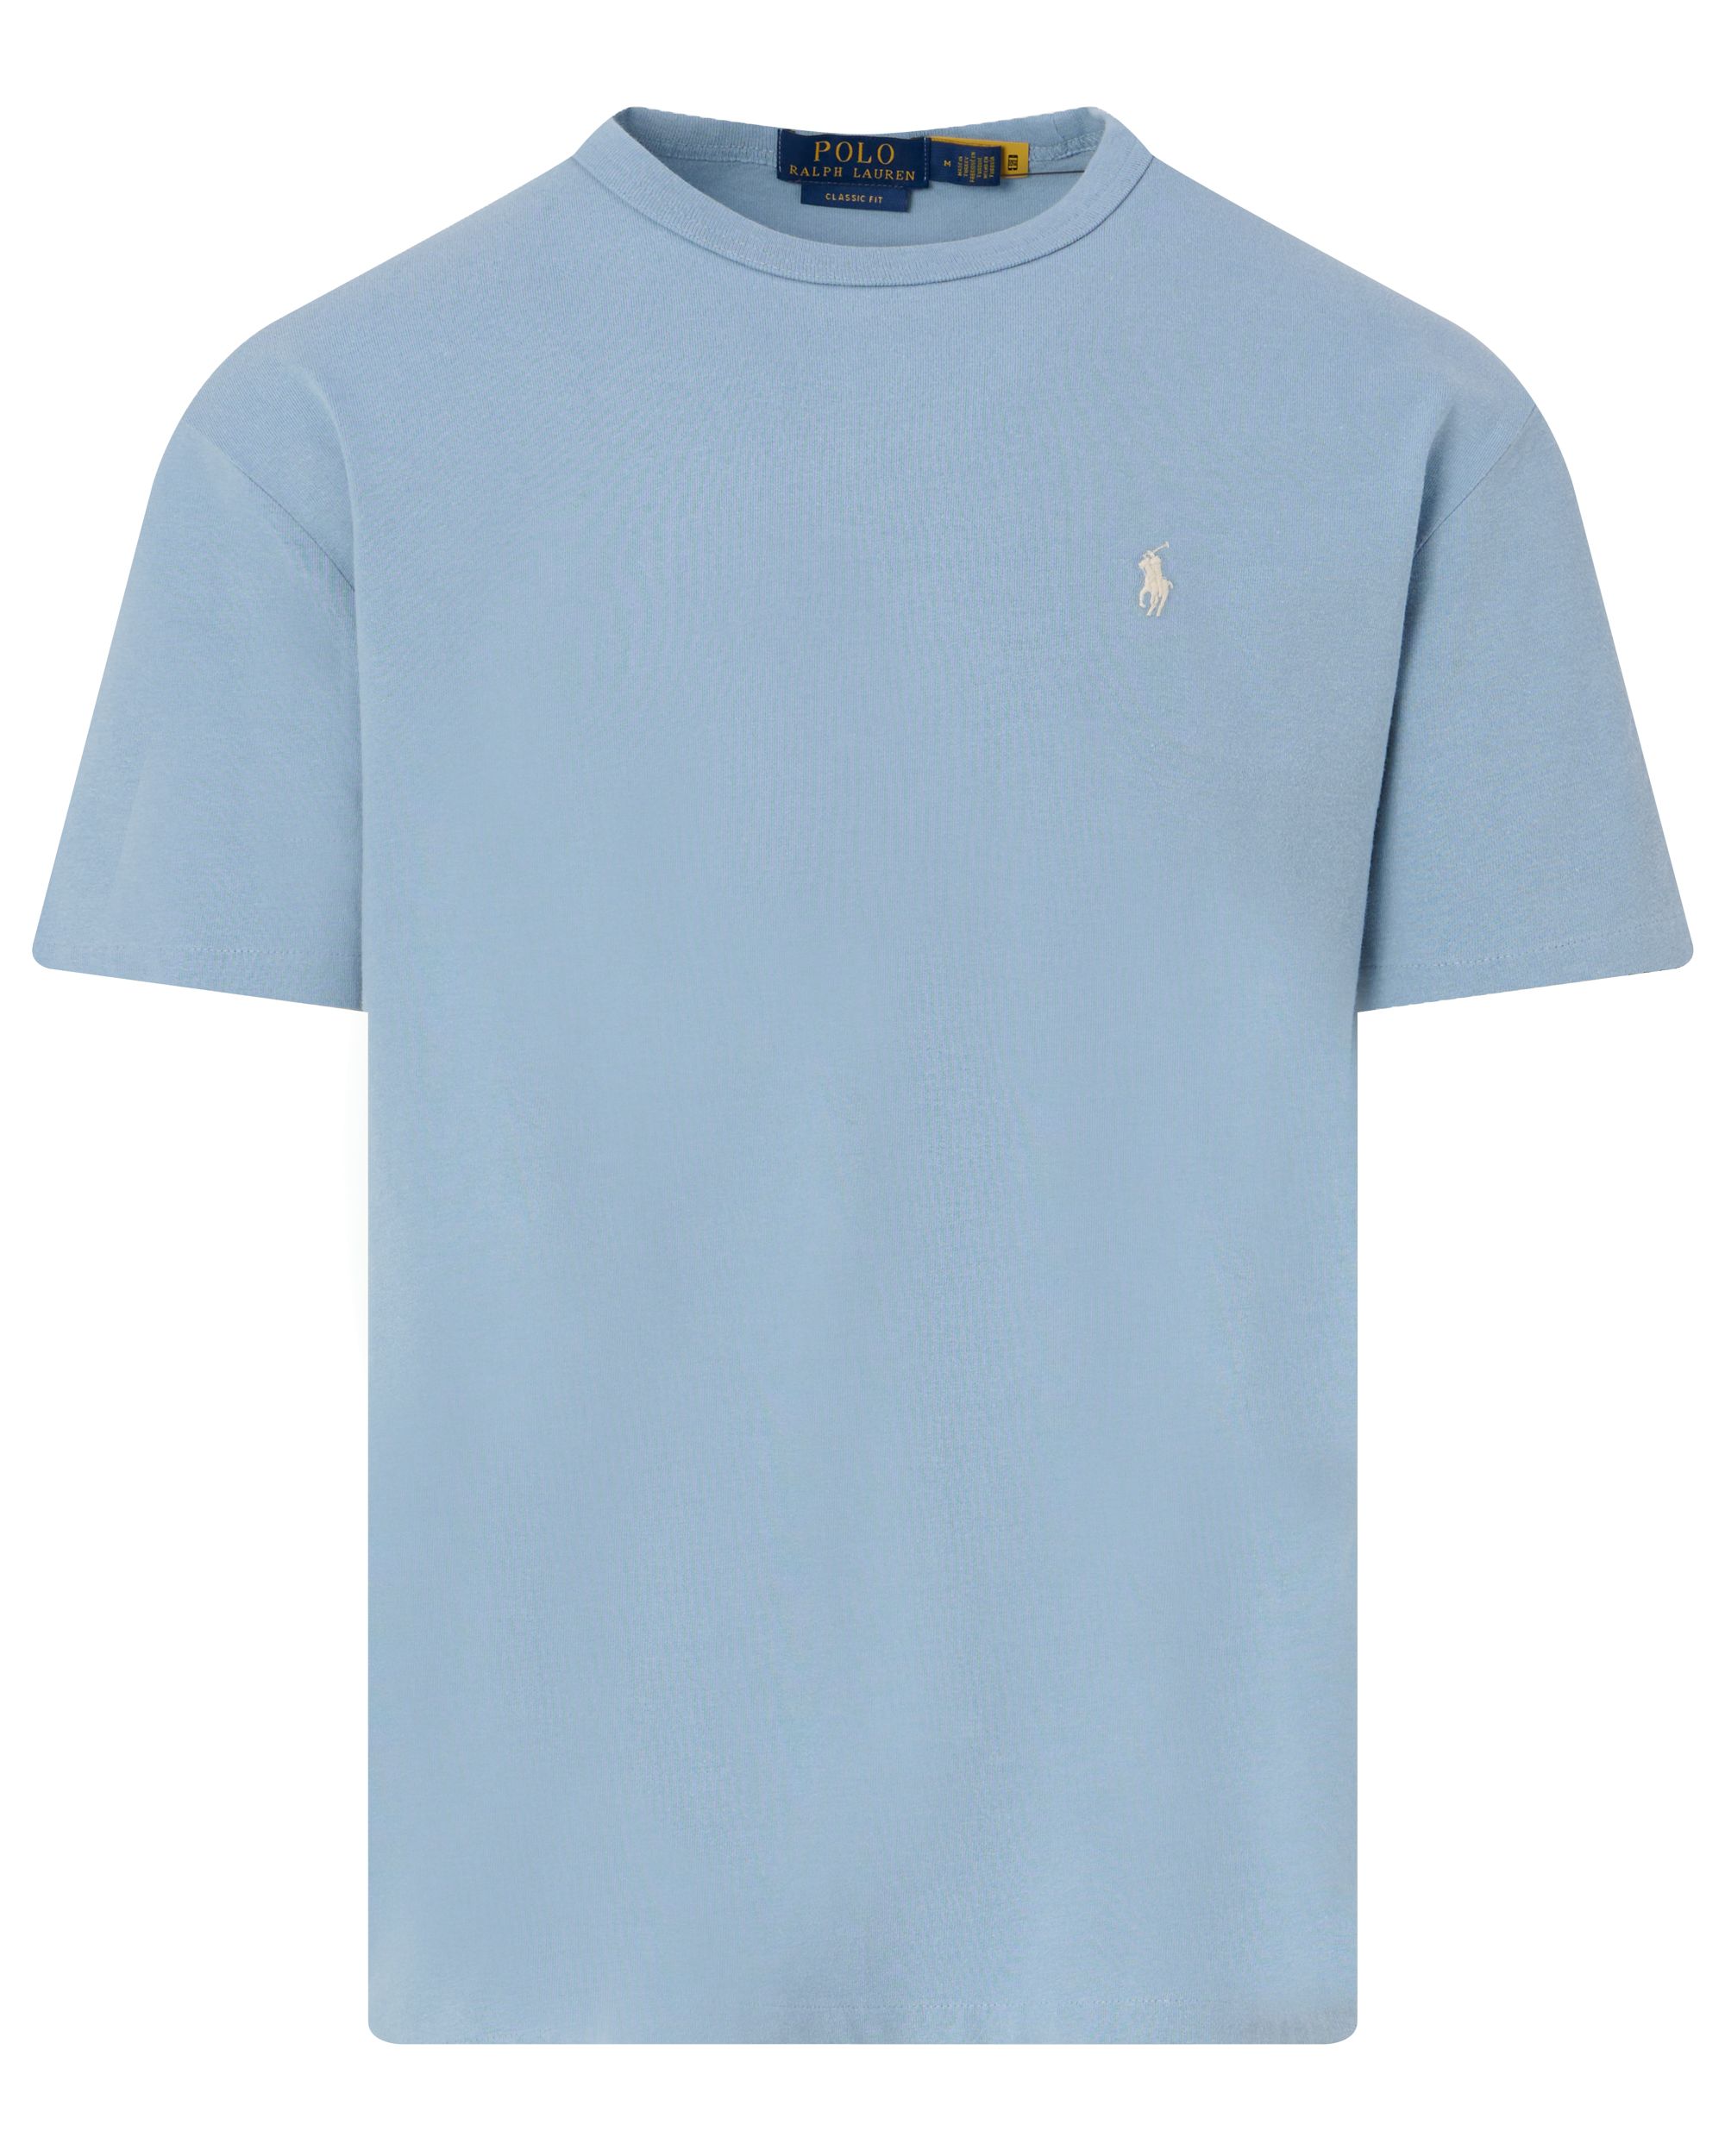 Polo Ralph Lauren T-shirt KM Blauw 095297-001-L